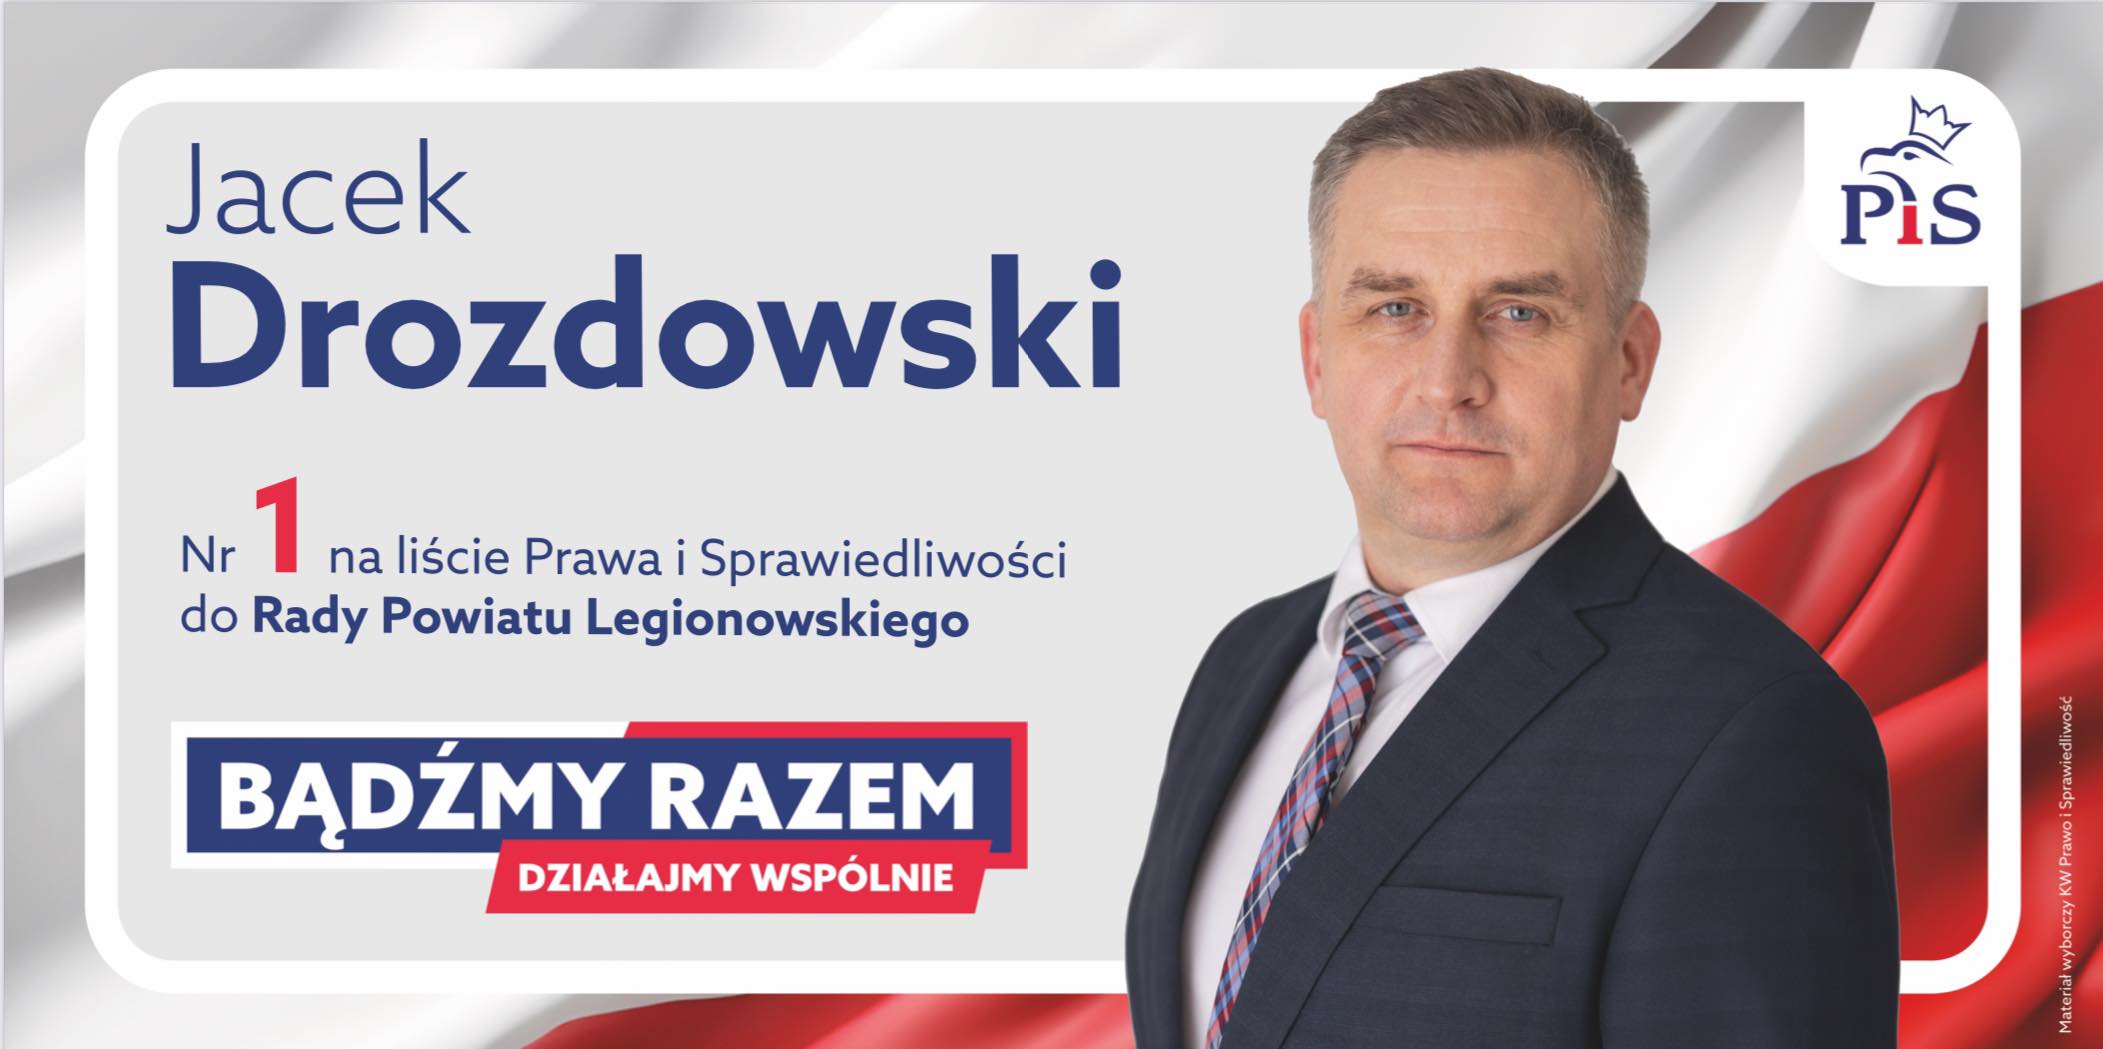 Powiat okręg 3 Wieliszew – Jacek Drozdowski